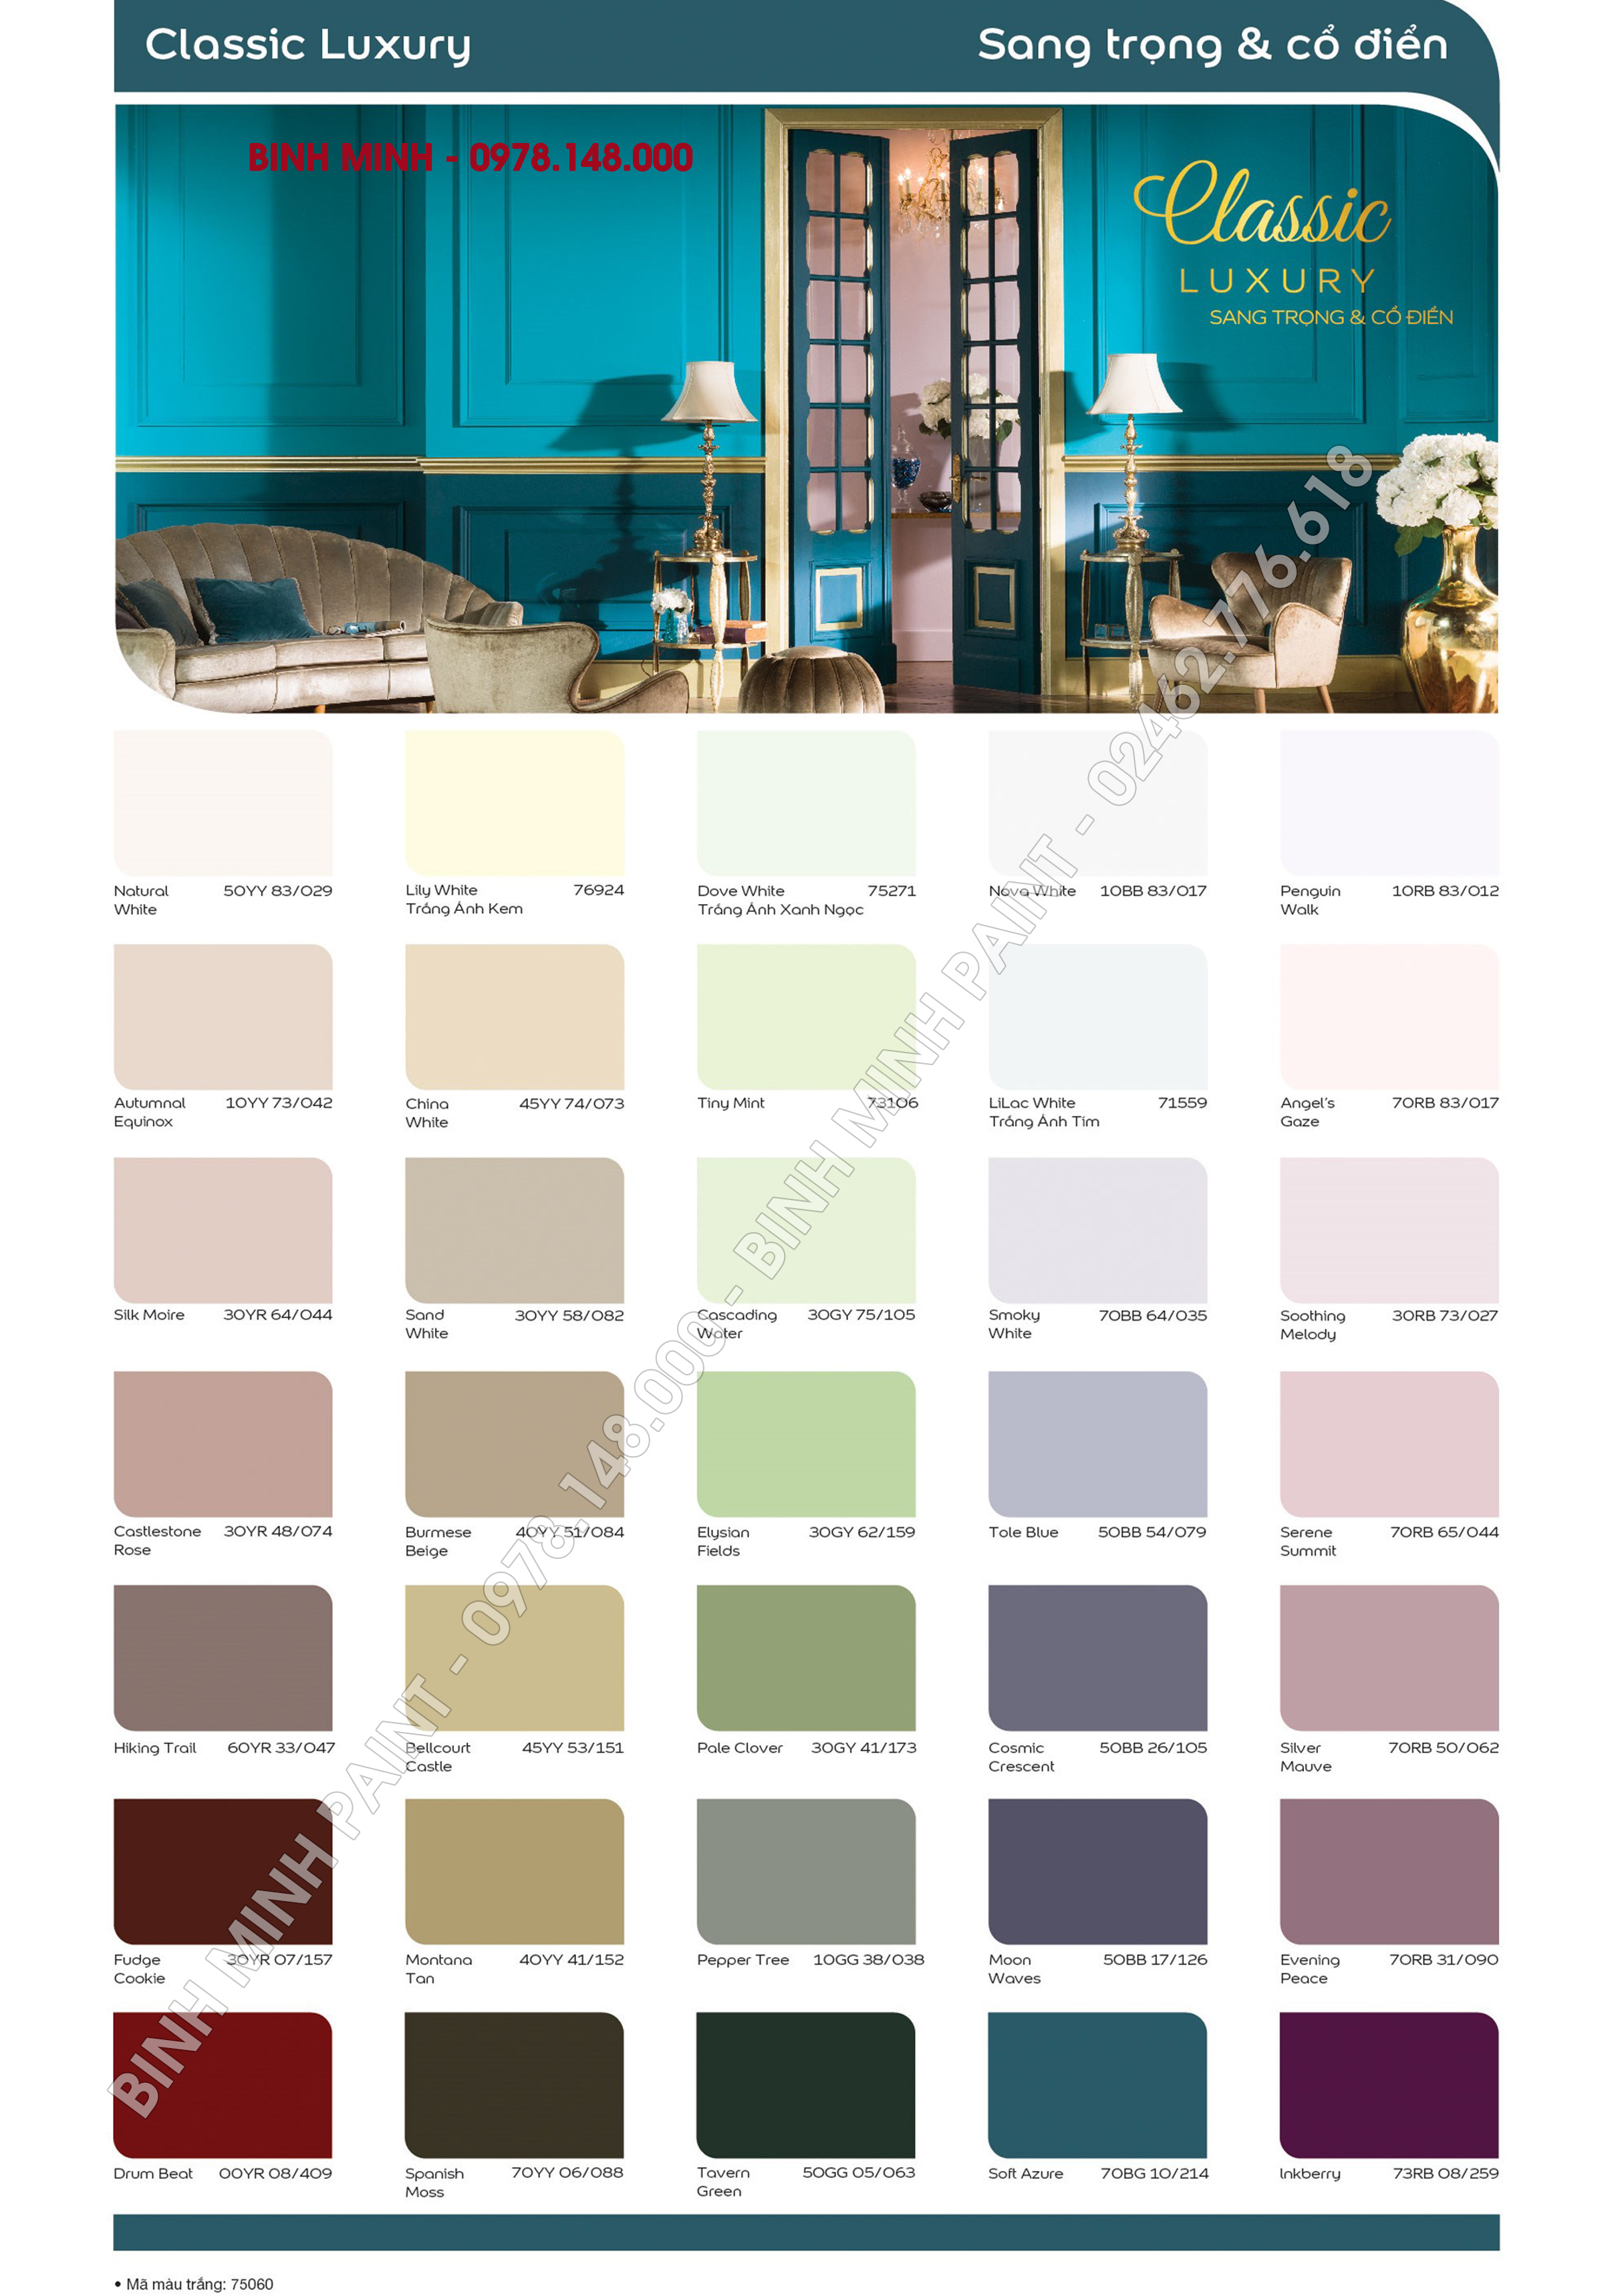 Bảng màu sơn Dulux 5IN1 Trong Nhà giúp bạn tạo ra không gian sống ấm cúng, hiện đại và tươi sáng. Chúng cung cấp cho bạn nhiều lựa chọn về gam màu từ trầm tới sáng. Cùng với sự đổ bóng và phản chiếu ánh sáng, sơn Dulux 5IN1 Trong Nhà giúp cho ngôi nhà trở nên hoàn hảo. Hãy xem các hình ảnh để biết thêm chi tiết.